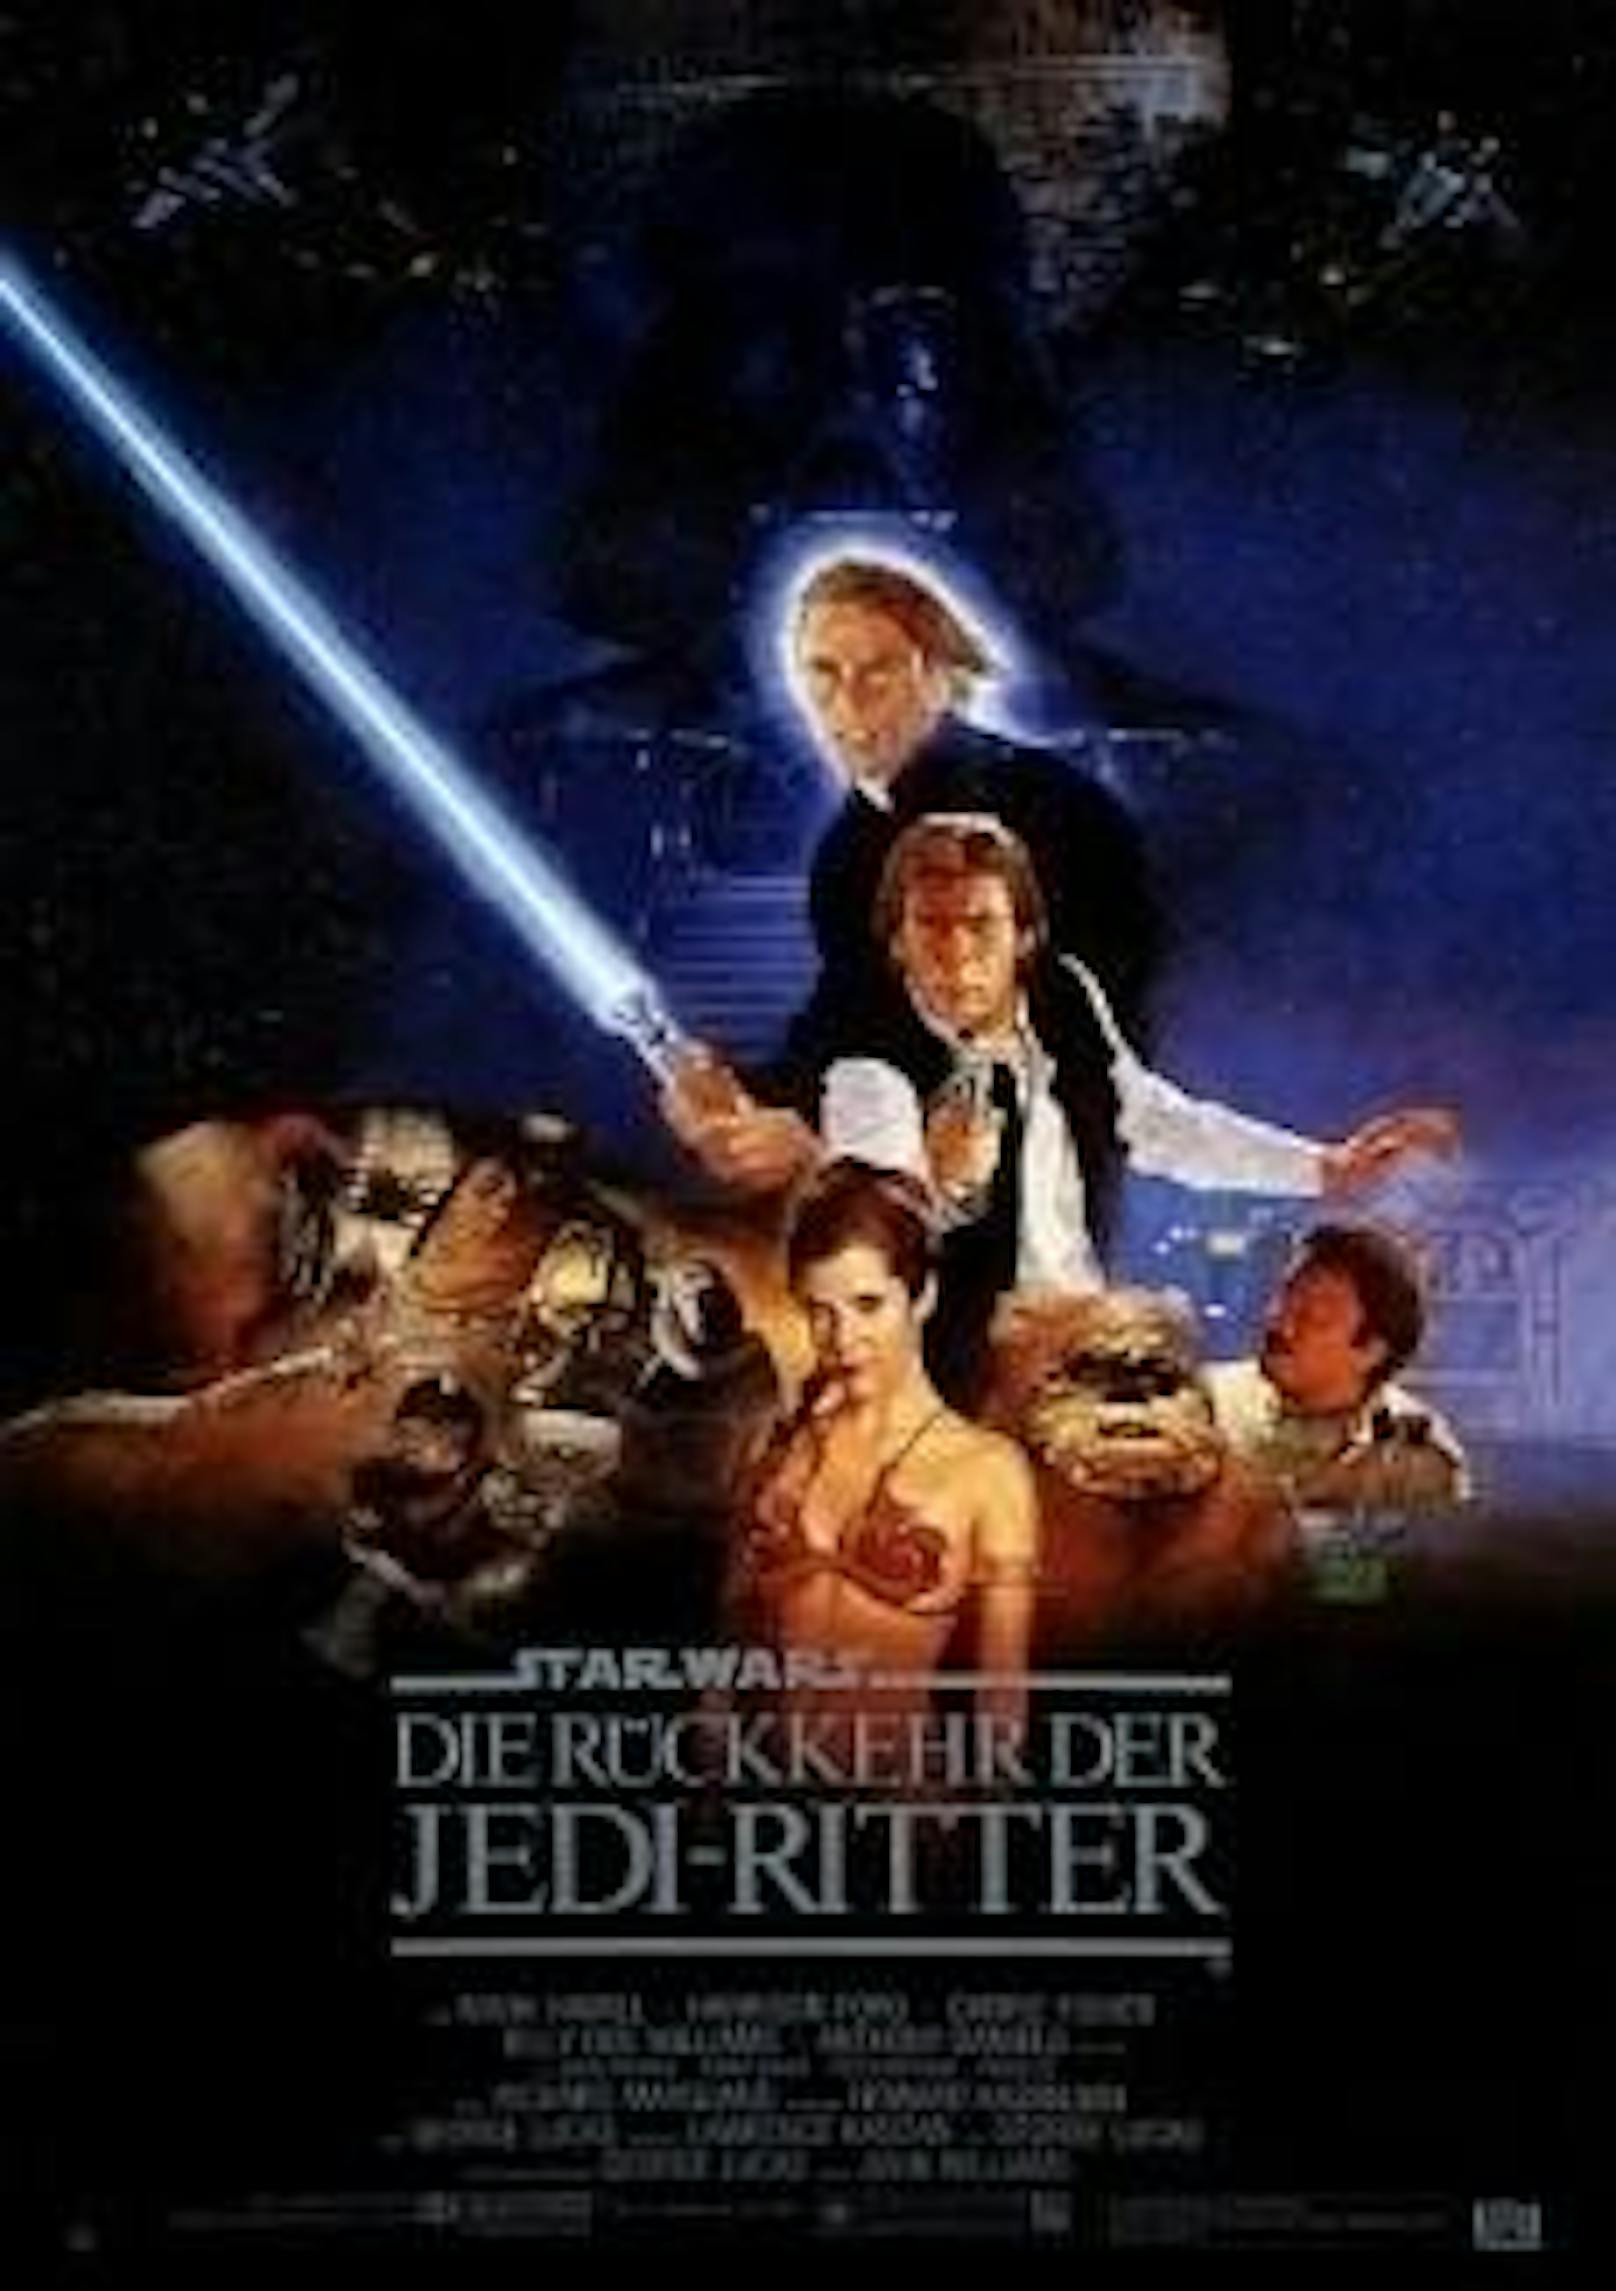 "Star Wars: Die Rückkehr der Jedi-Ritter"